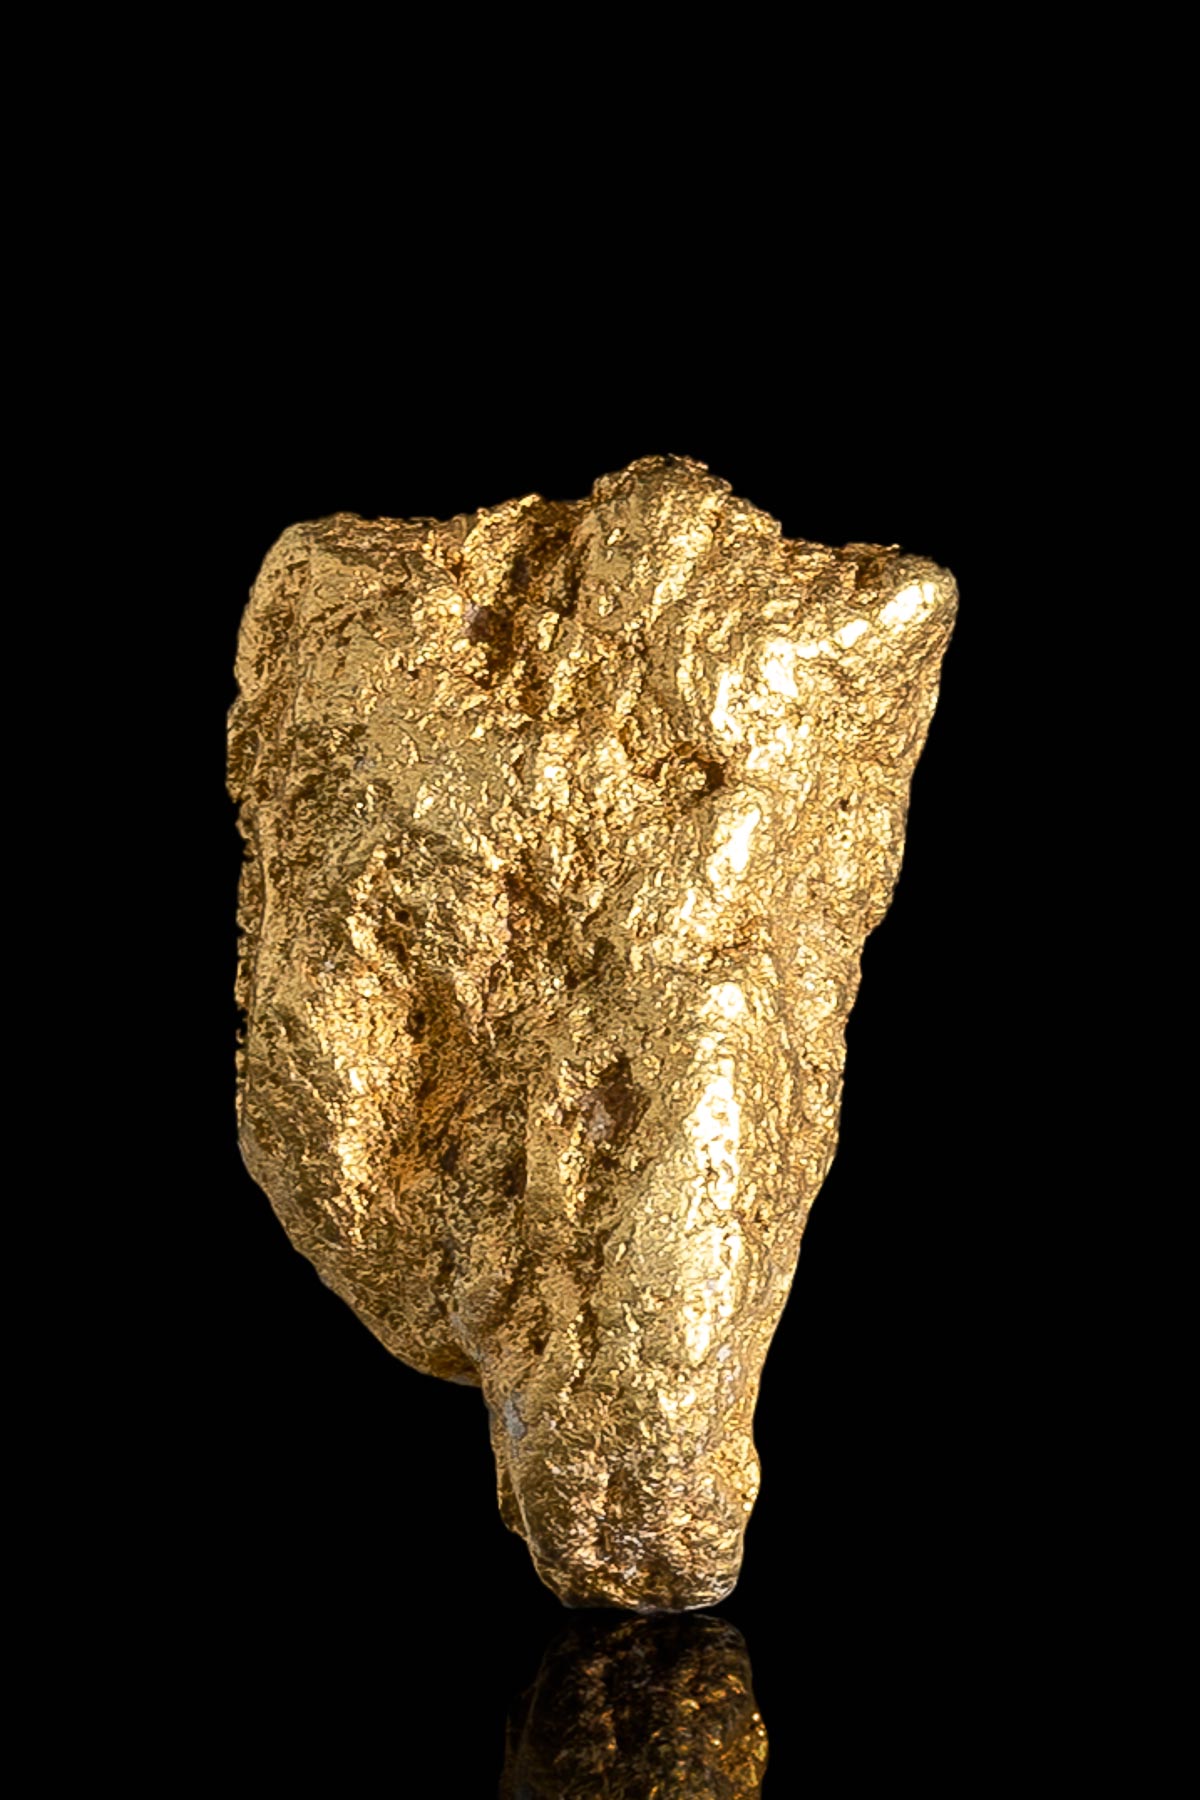 Triangle Shaped Natural Alaska Gold Nugget - 3.25 grams